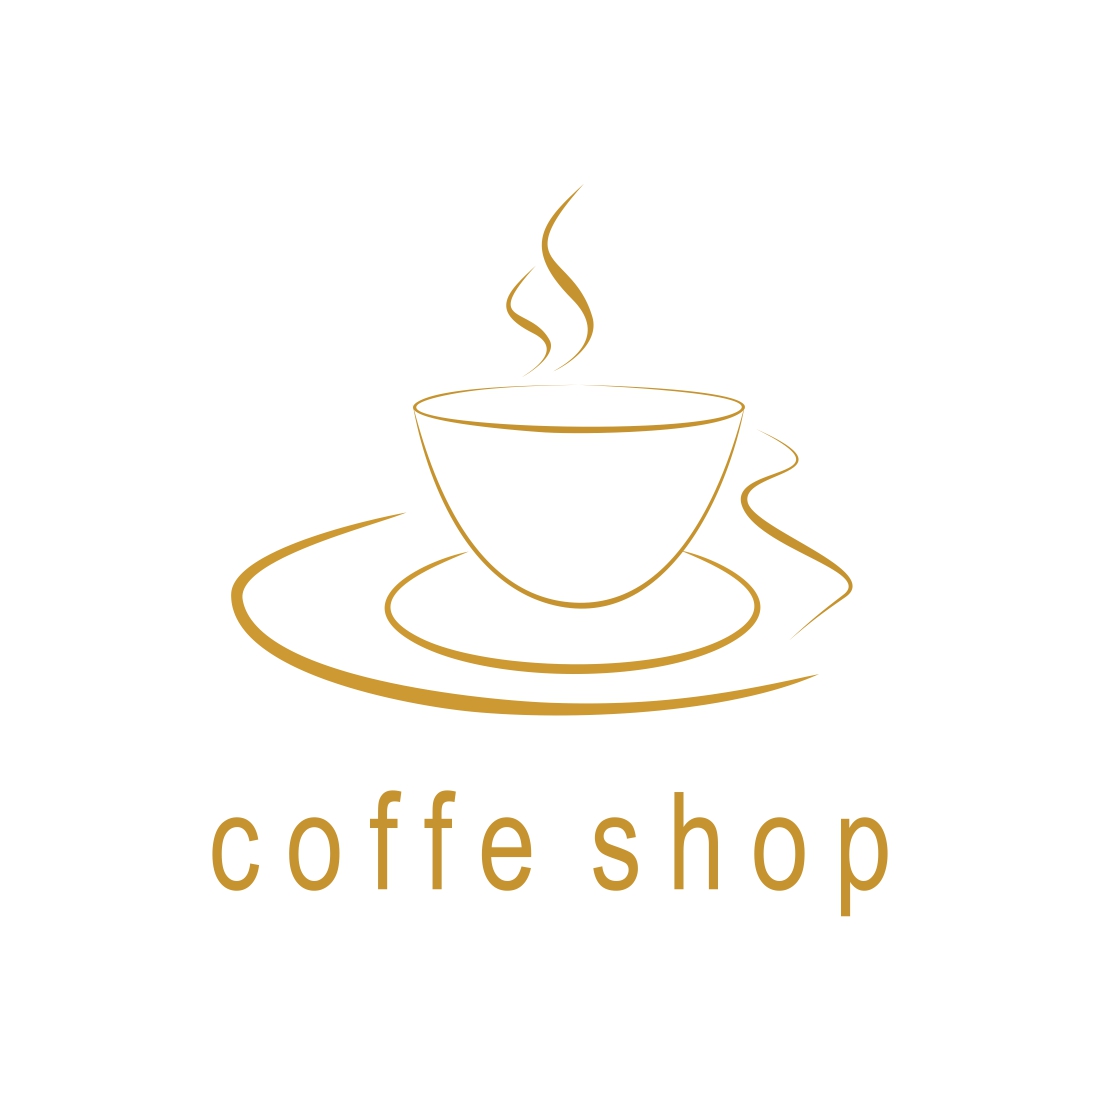 coffee shop logo vector design templates cover image.